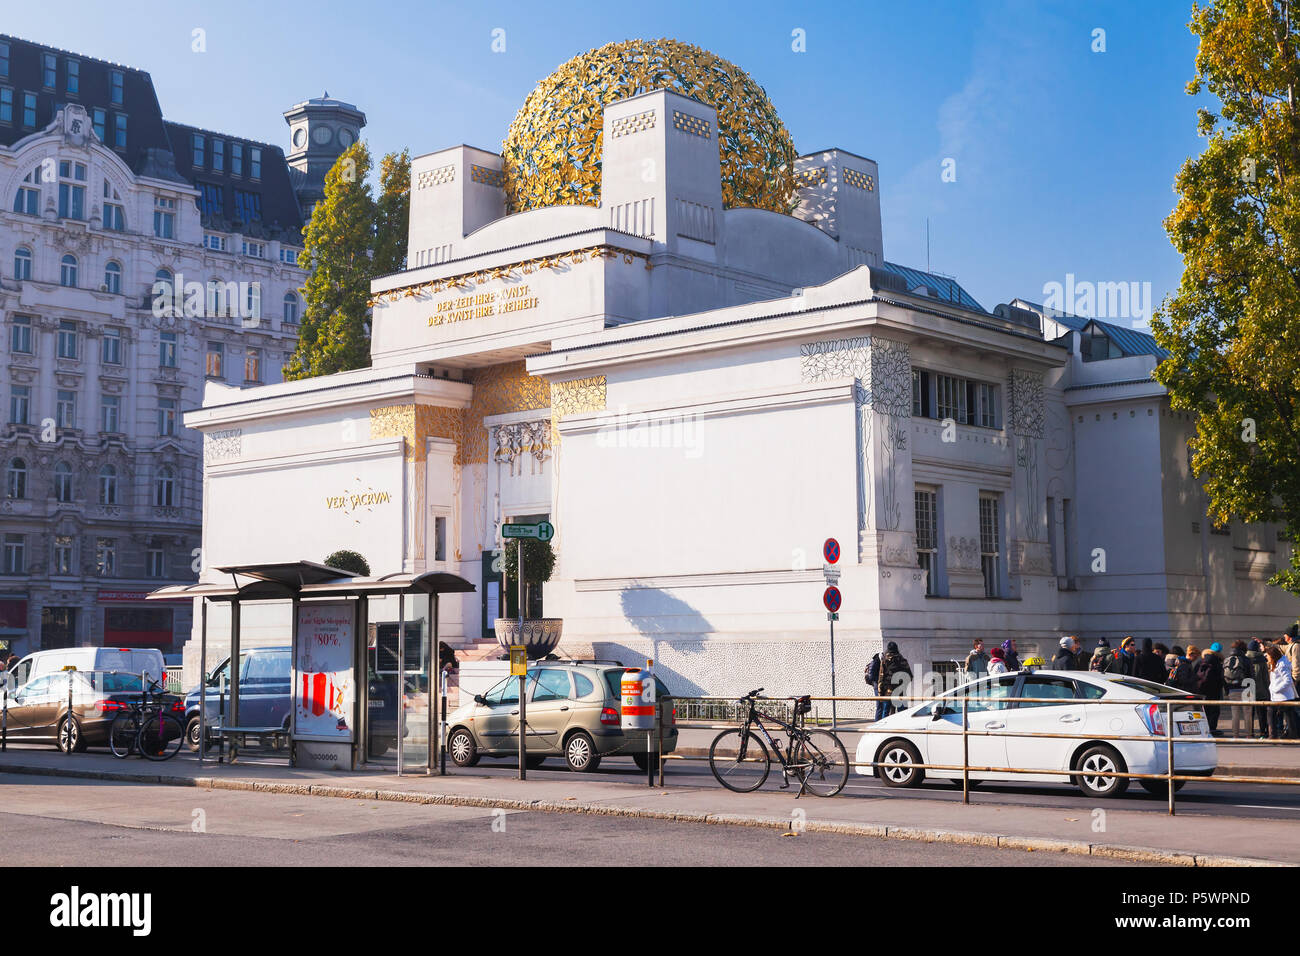 Wien, Österreich - November 4, 2015: Der Wiener Secession Gebäude, 1897 erbaut von Joseph Maria Olbrich. Gewöhnliche Menschen zu Fuß in der Nähe Stockfoto